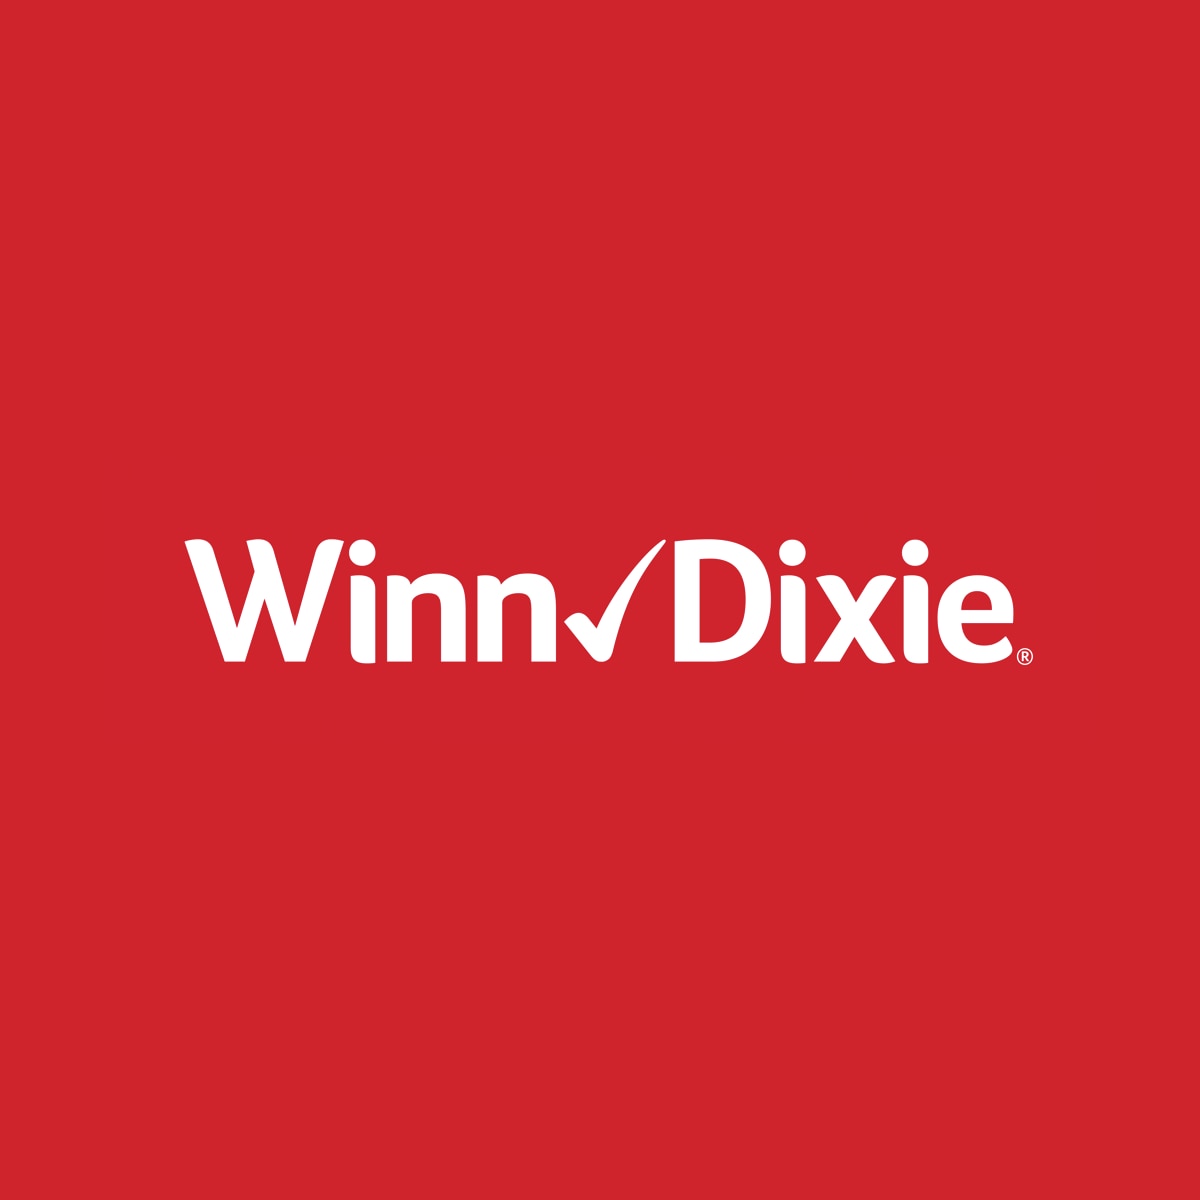 Online offer | Winn-Dixie